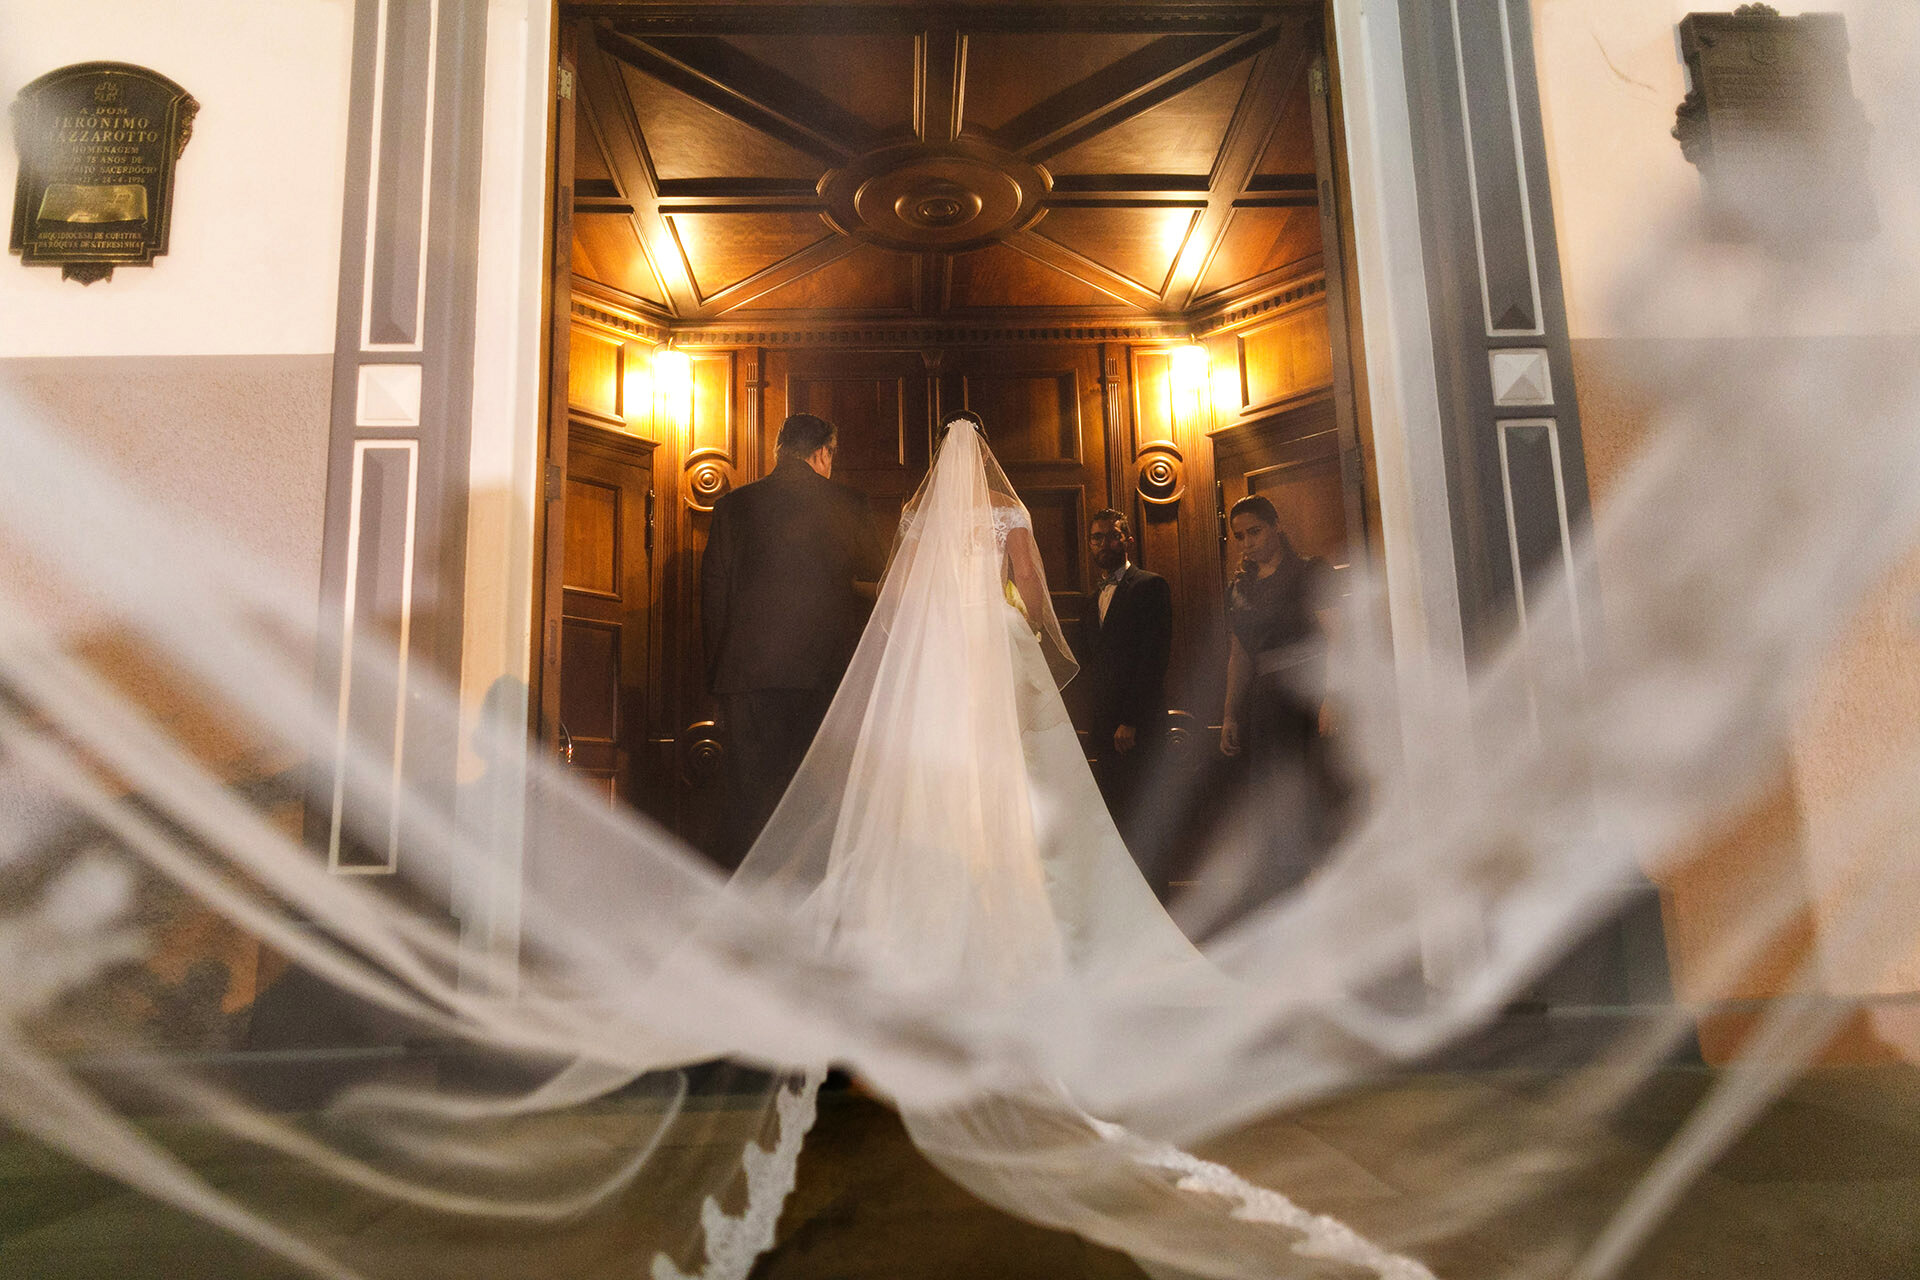 Cheng NV fotografo de casamento em Curitiba- Melhor fotografia do brasil - MIni casamento - Inspiração de decoração - 2020 - noiva - inesquecivel casamento_.26.jpg